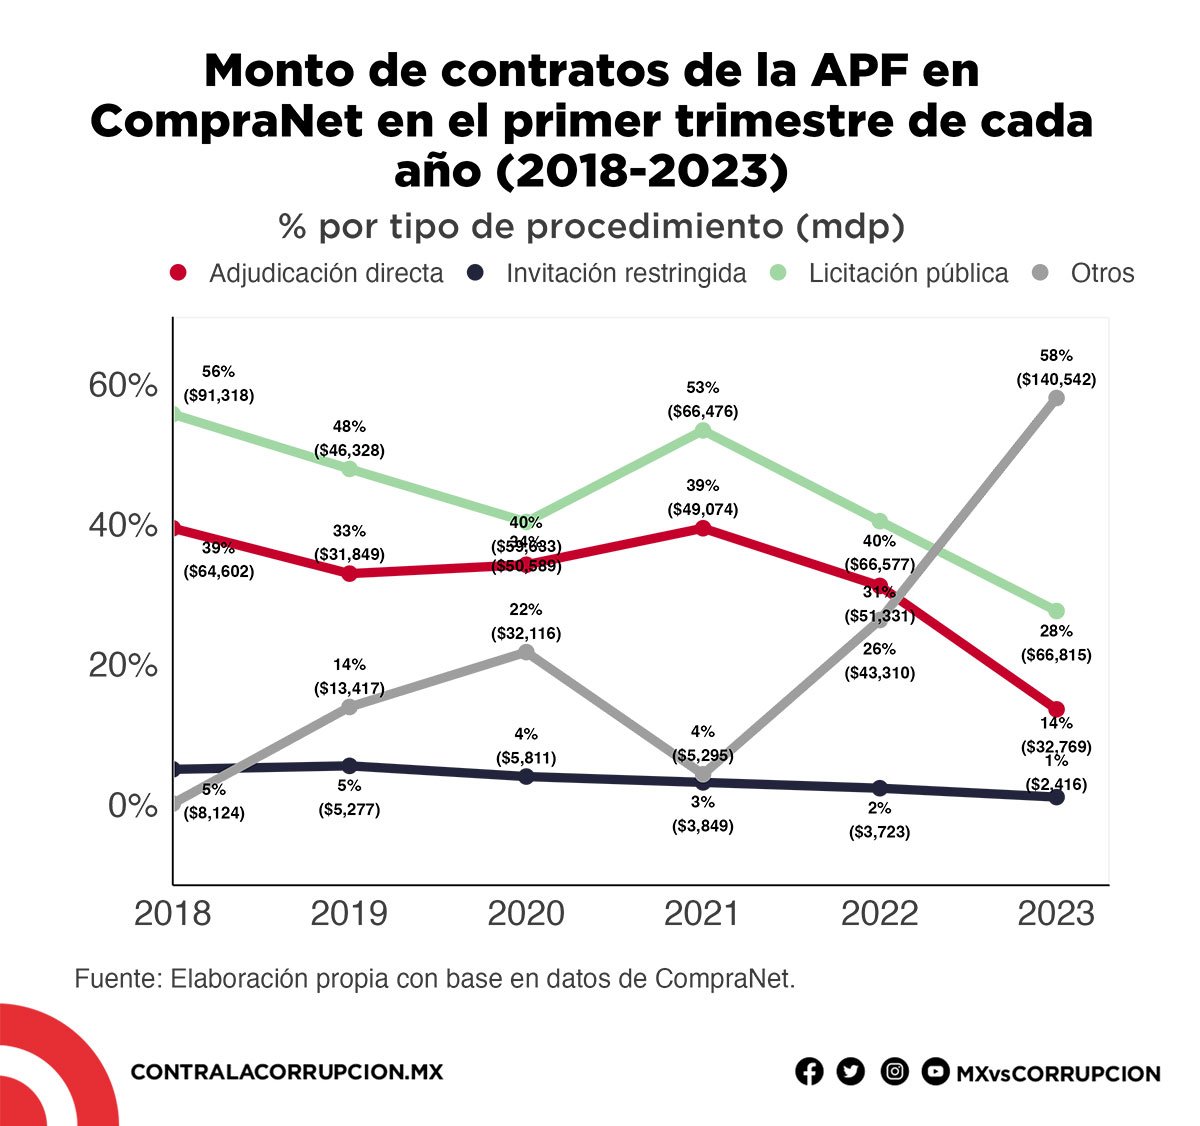 Monto de contratos de la APF en CompraNet en el primer trimestre de cada año (2018-2023)